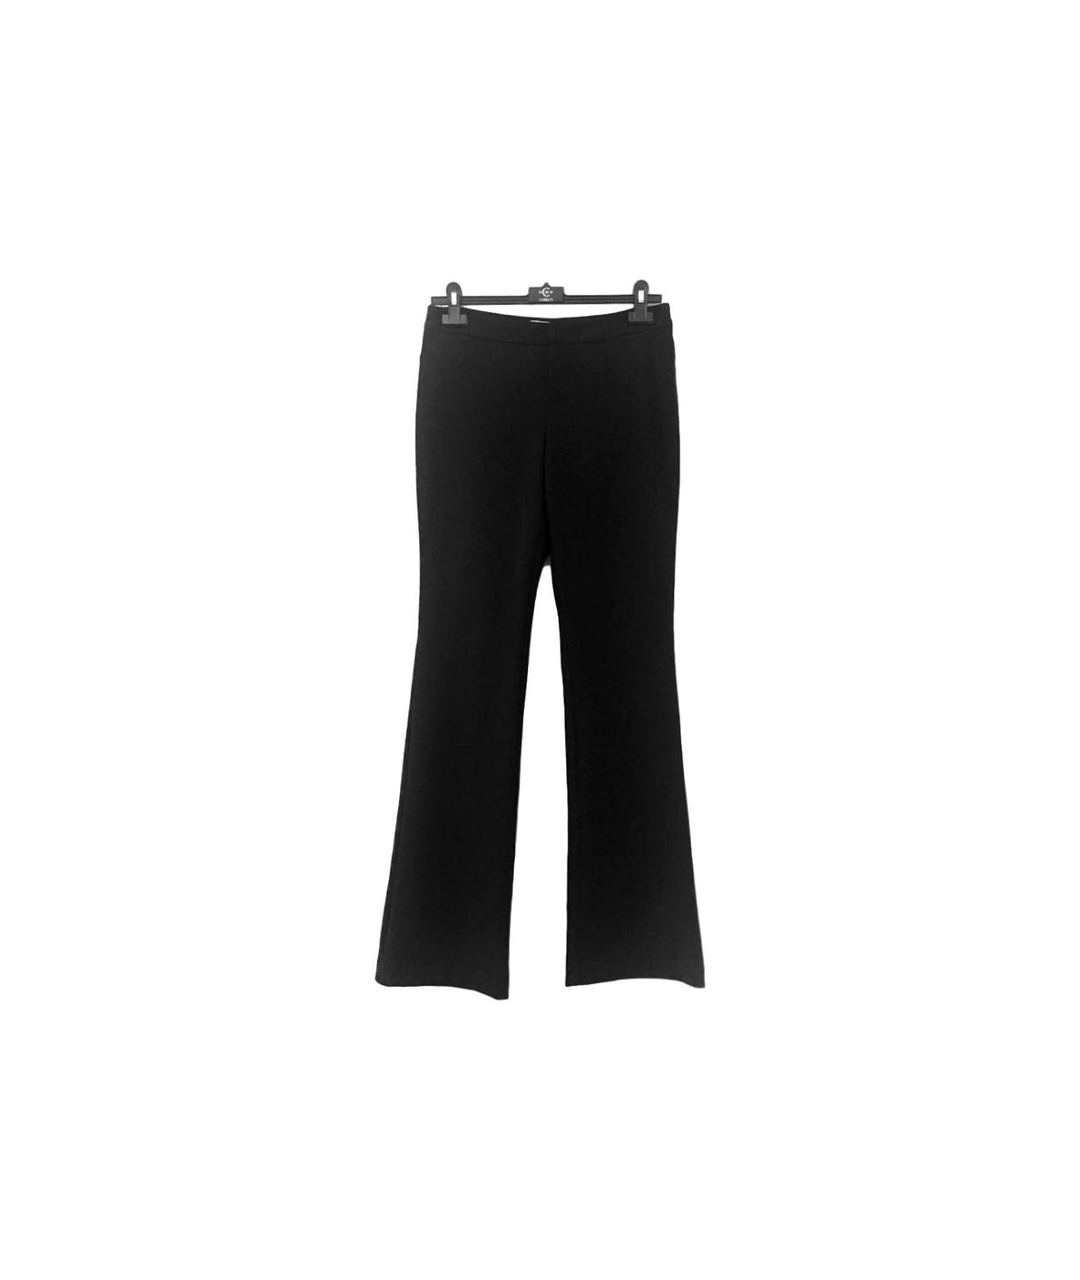 MICHAEL KORS Черные вискозные брюки широкие, фото 1